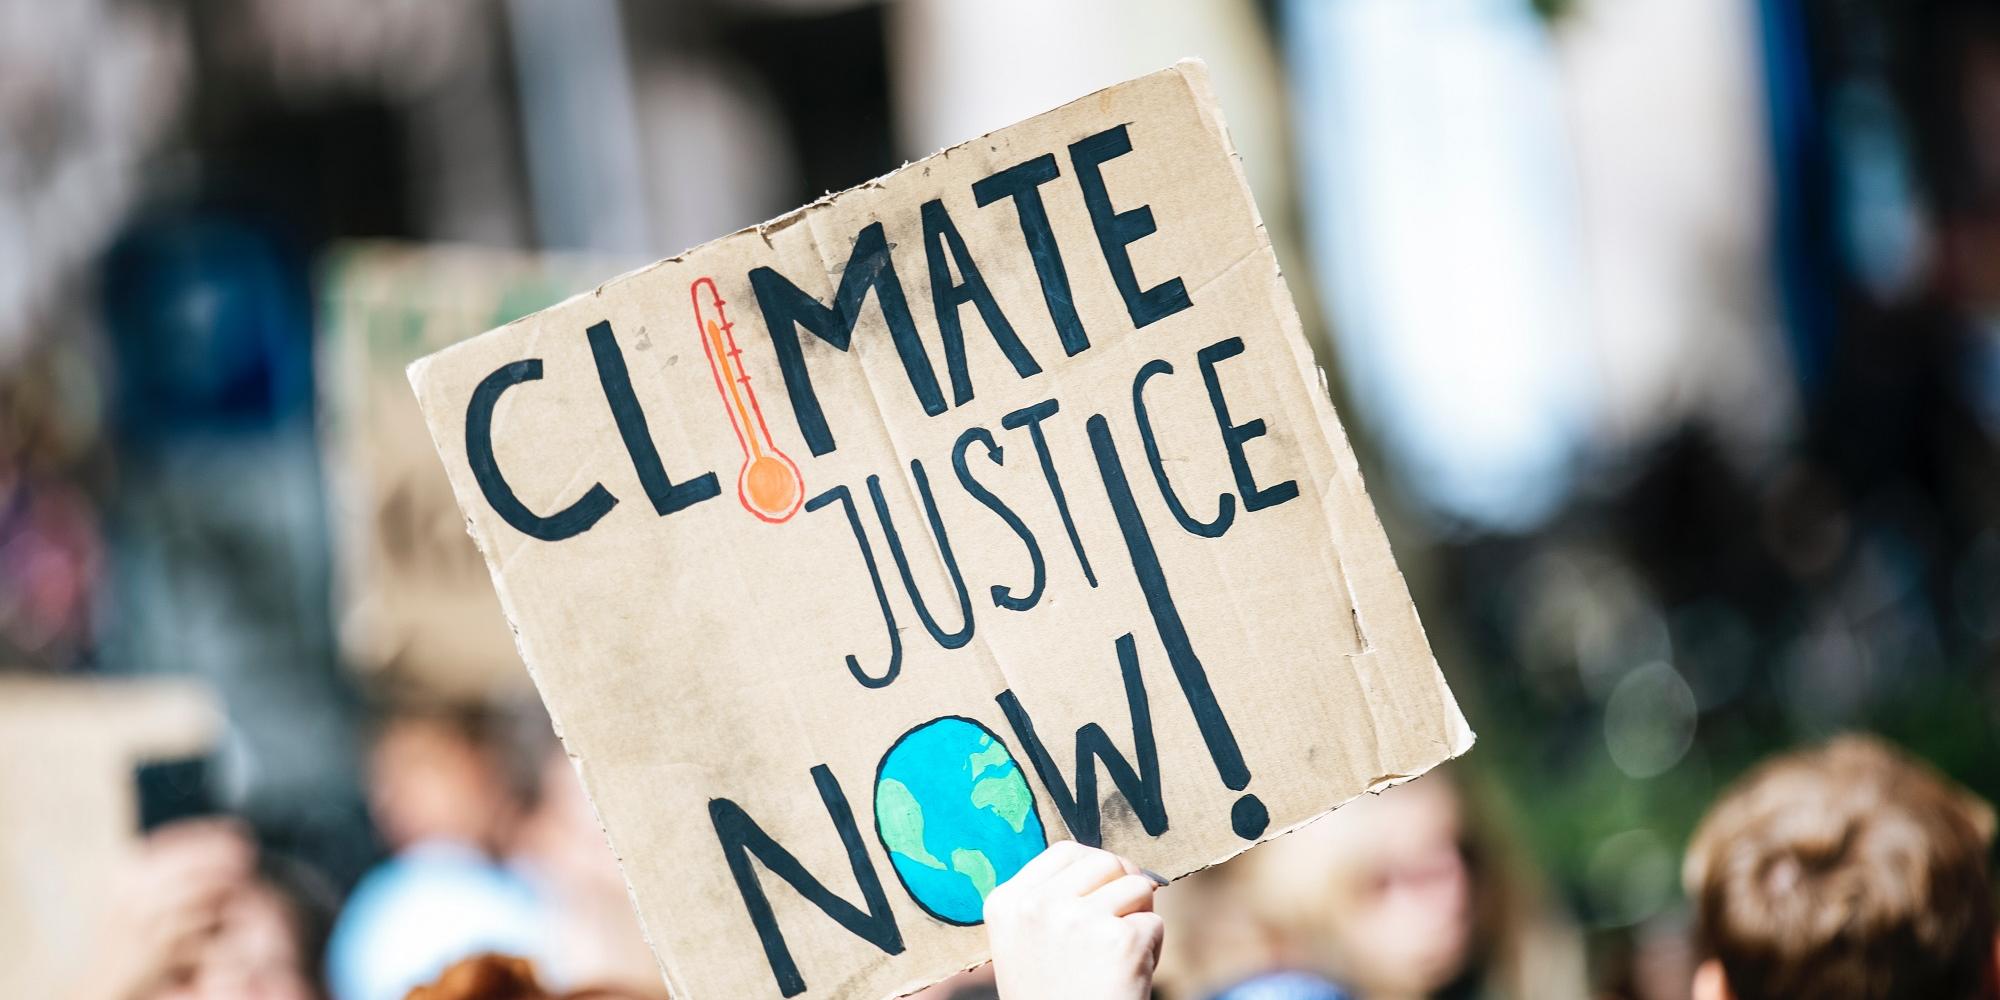 Menschen auf einer Demonstration zum globalen Klimawandel, Schild mit der Aufschrift "Climate Justice Now!"